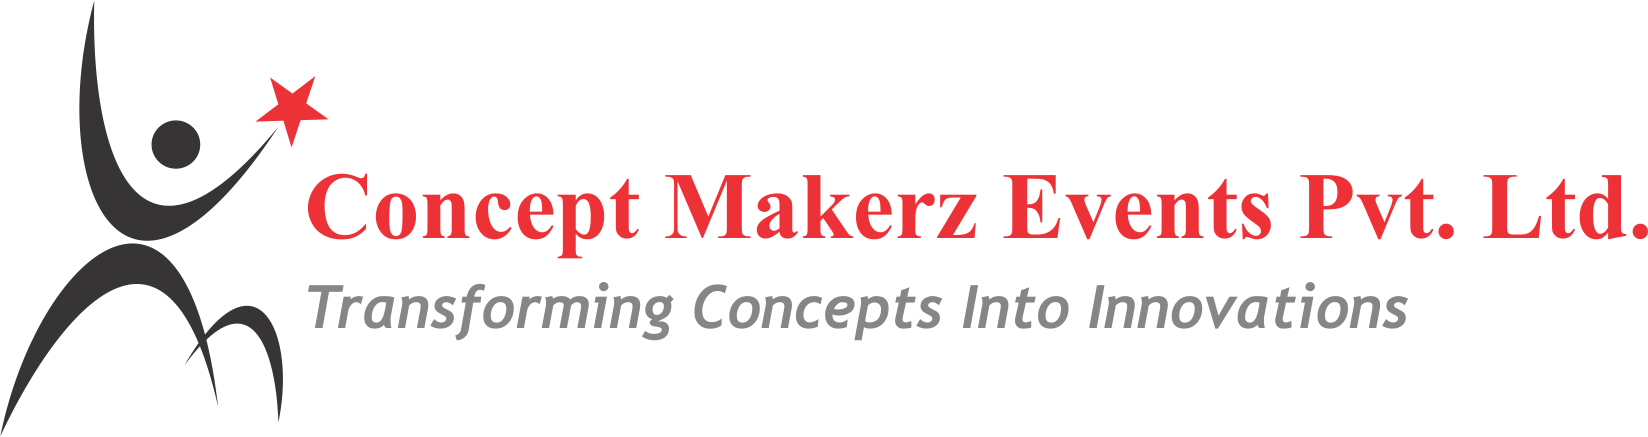 Concept Makerz Events